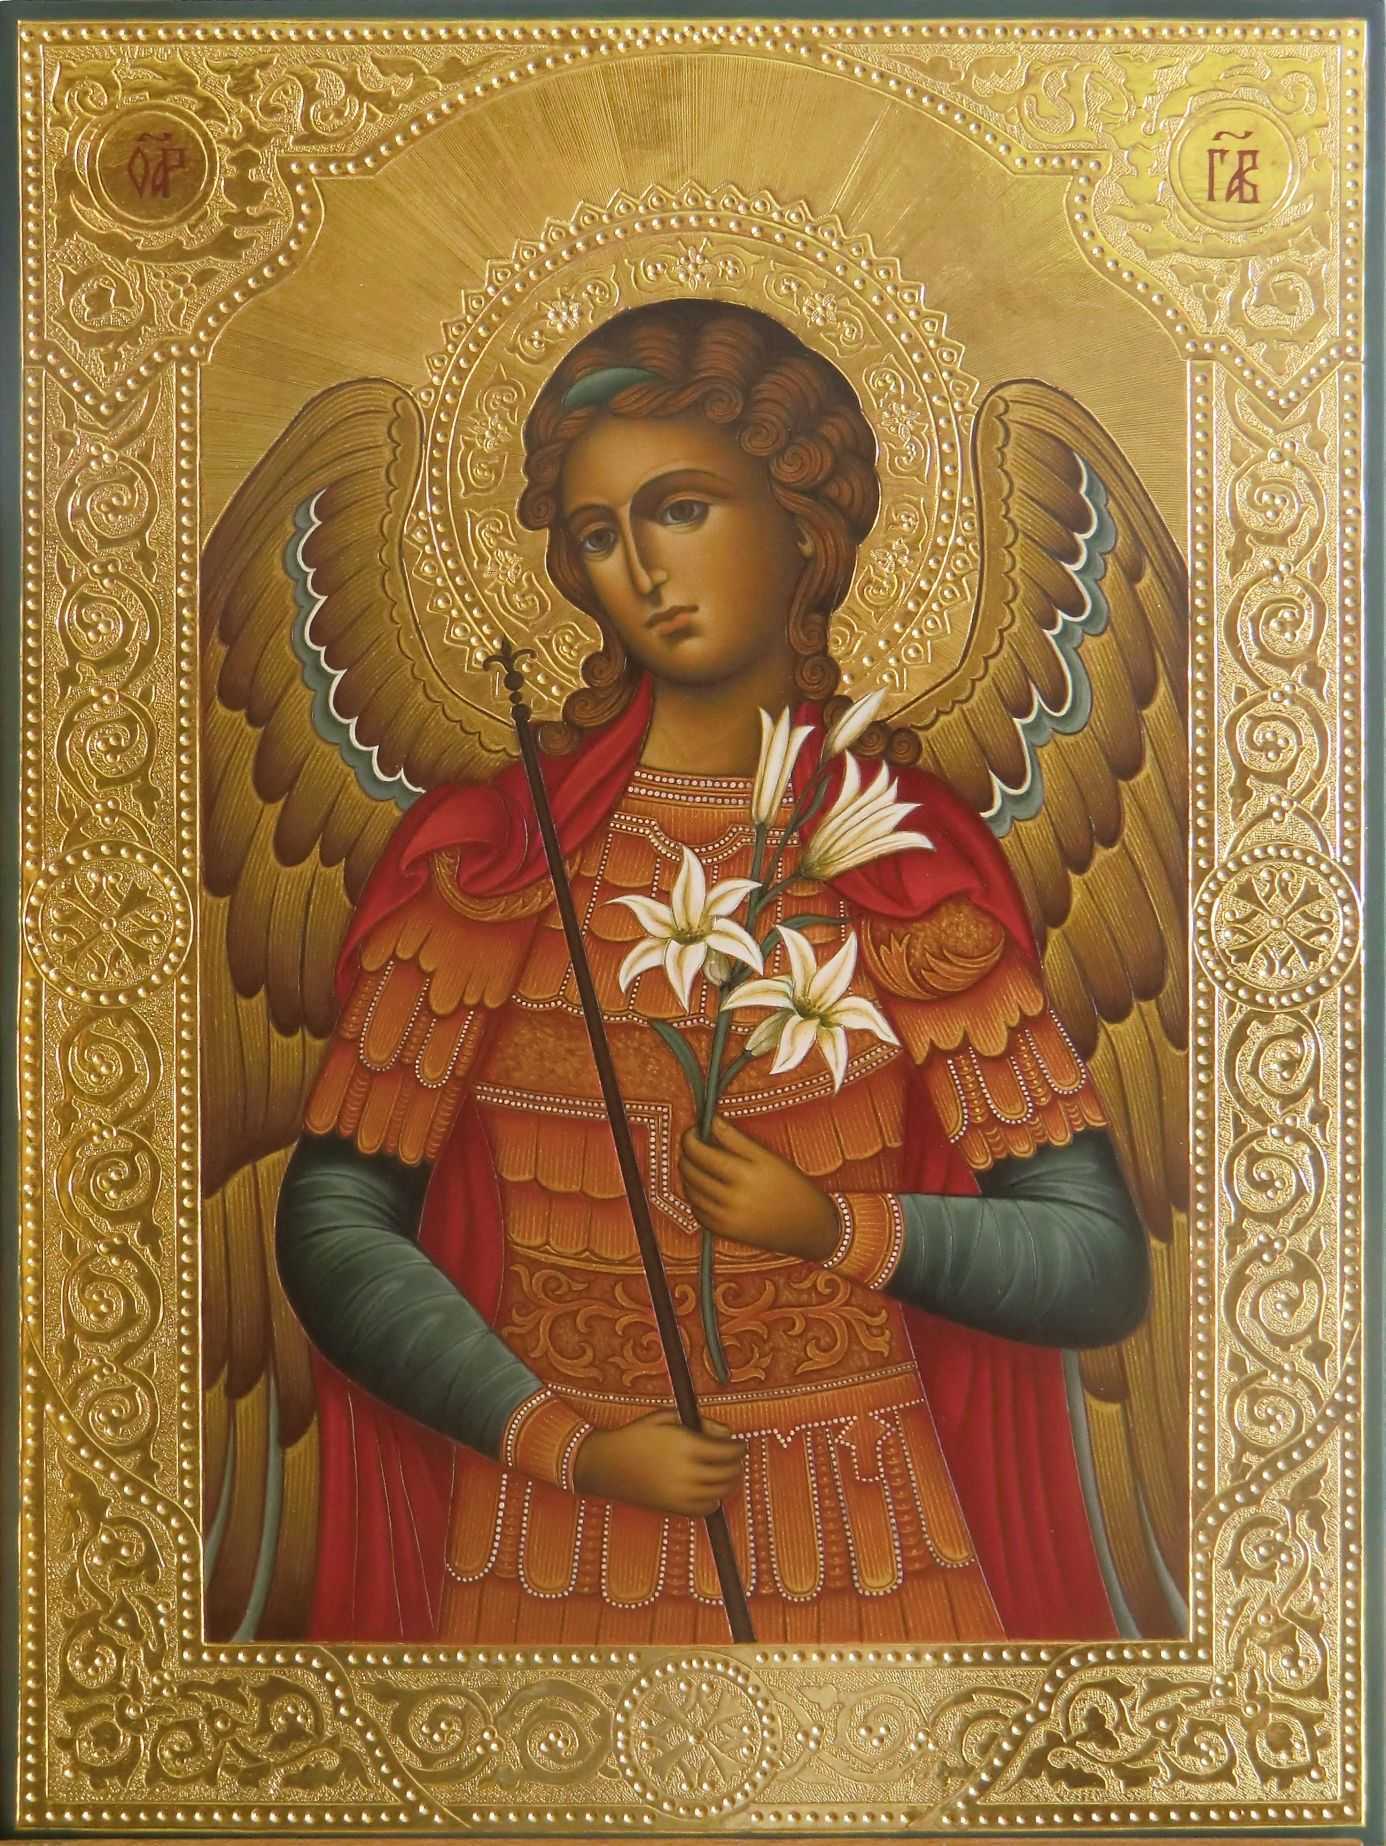 Иконы святых архангелов. Икона Архангела Михаила и Архангела Гавриила.